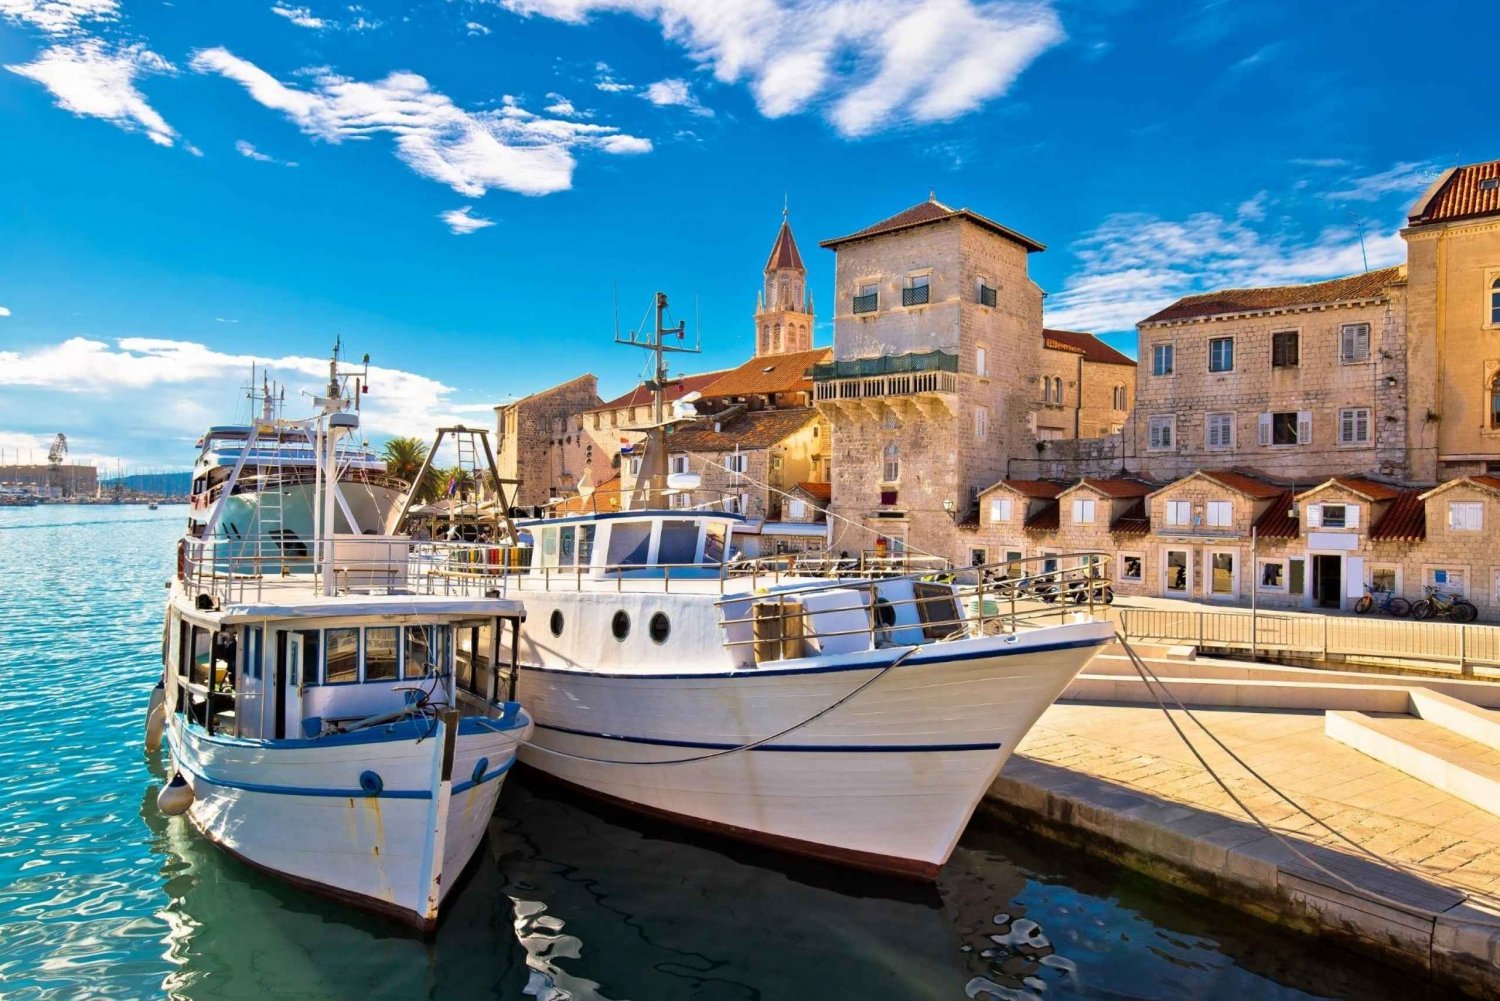 Split : Visite en bus de Trogir + visite à pied gratuite de Split